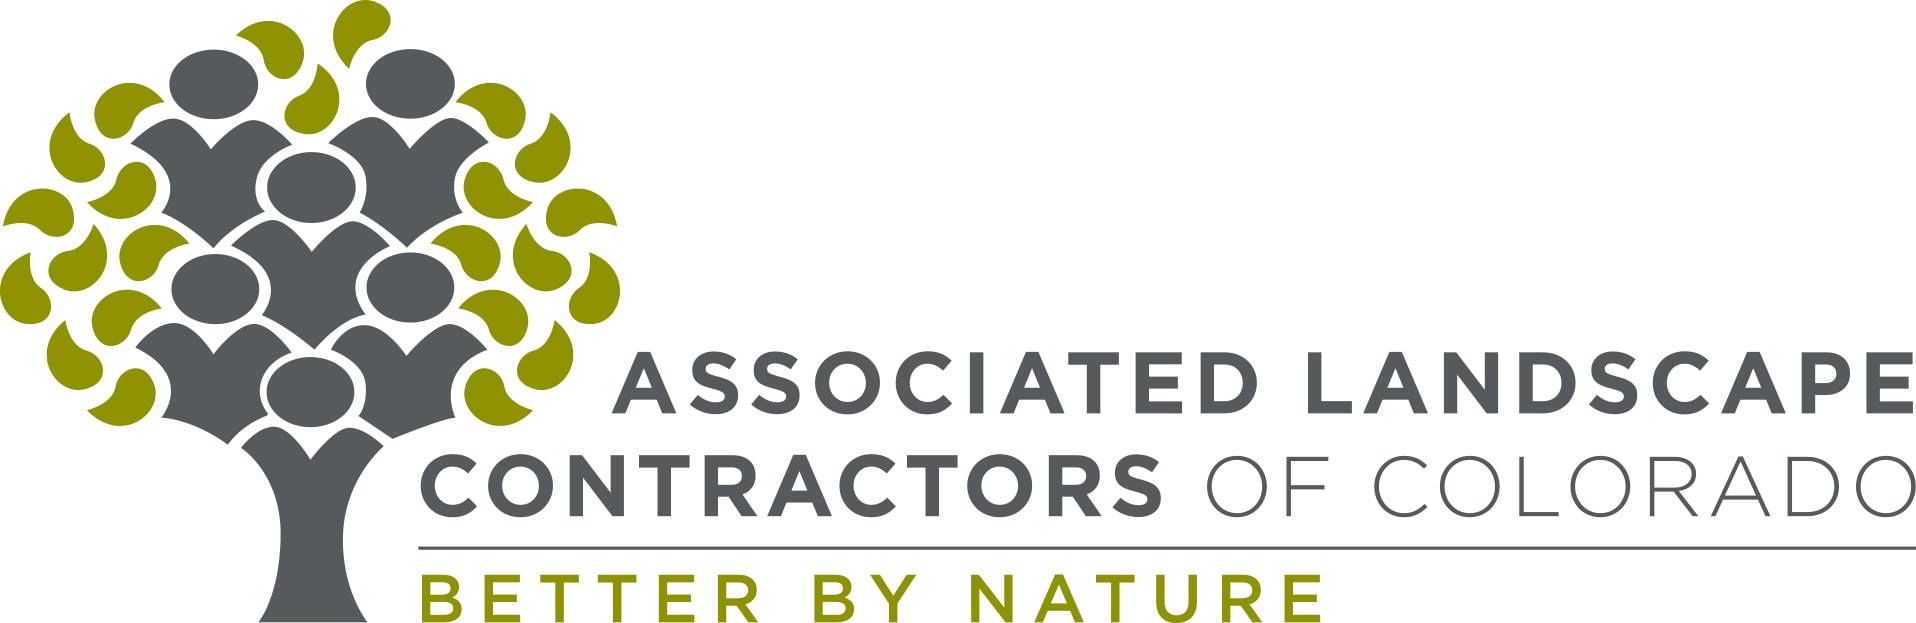 Associated Landscape Contractors of Colorado logo